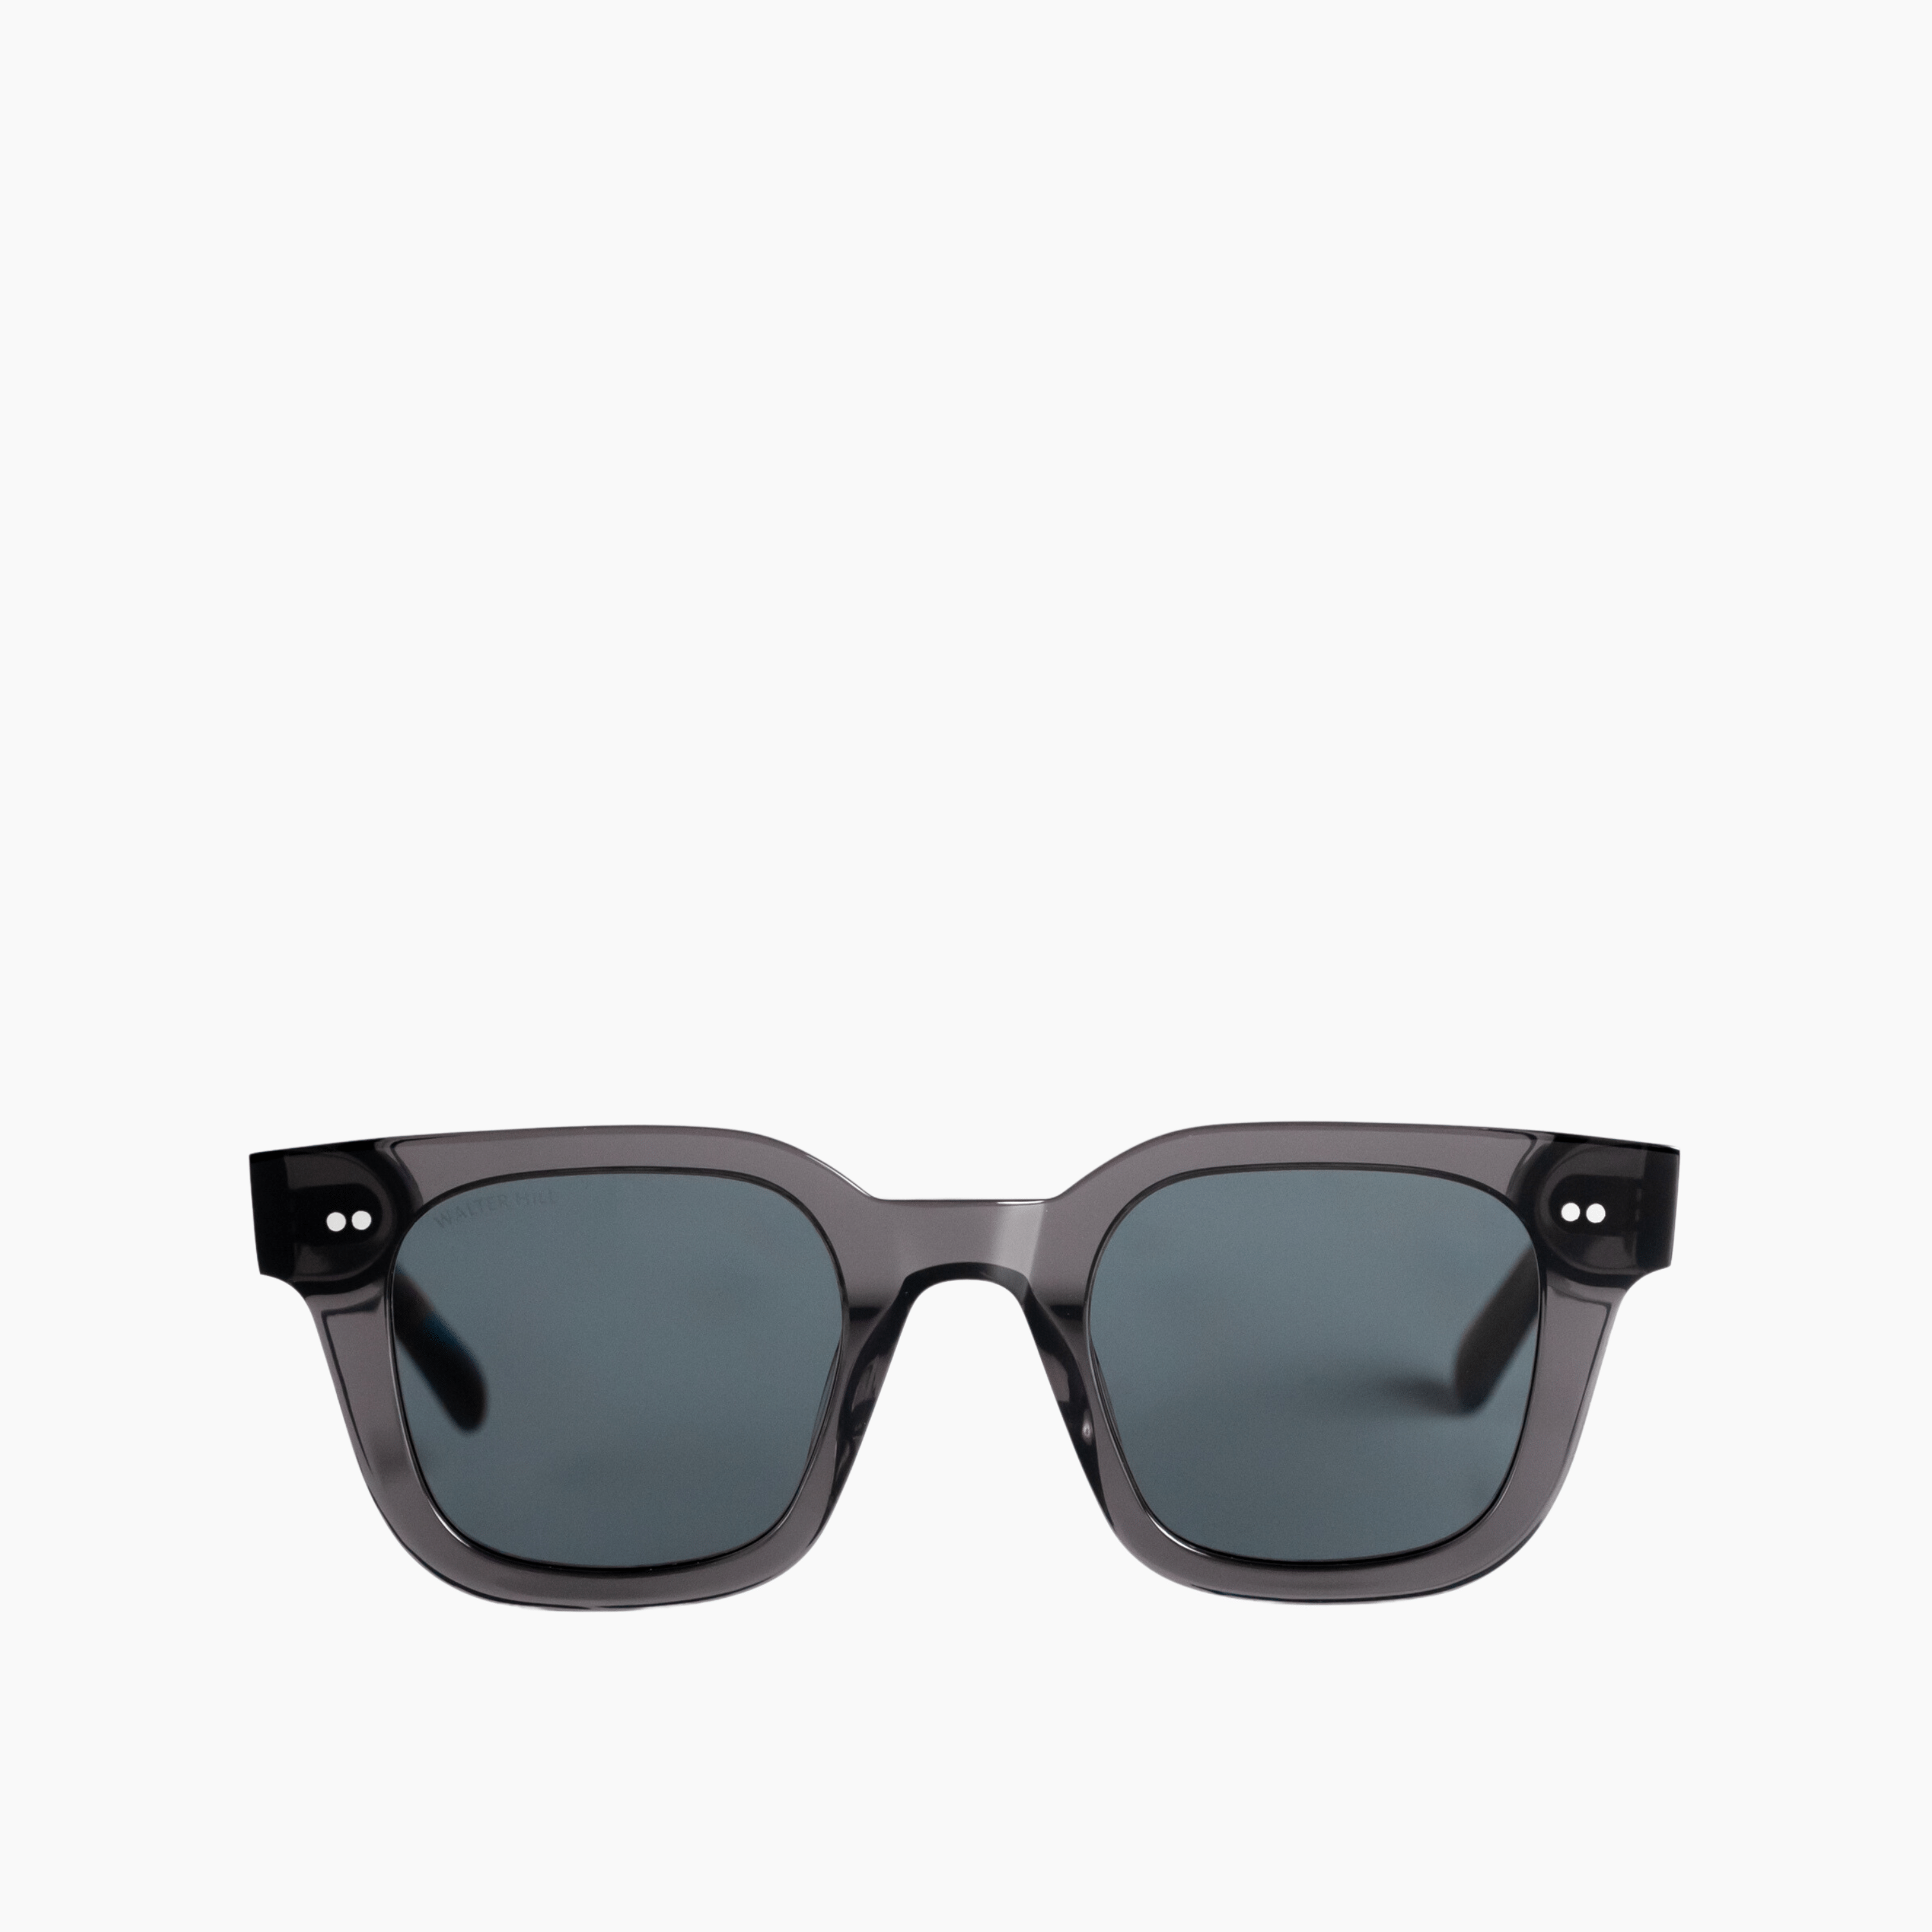 Walter Hill Sunglasses Dark Gray / Standard / Polarized Cat.3 XAVIER - Dark Gray